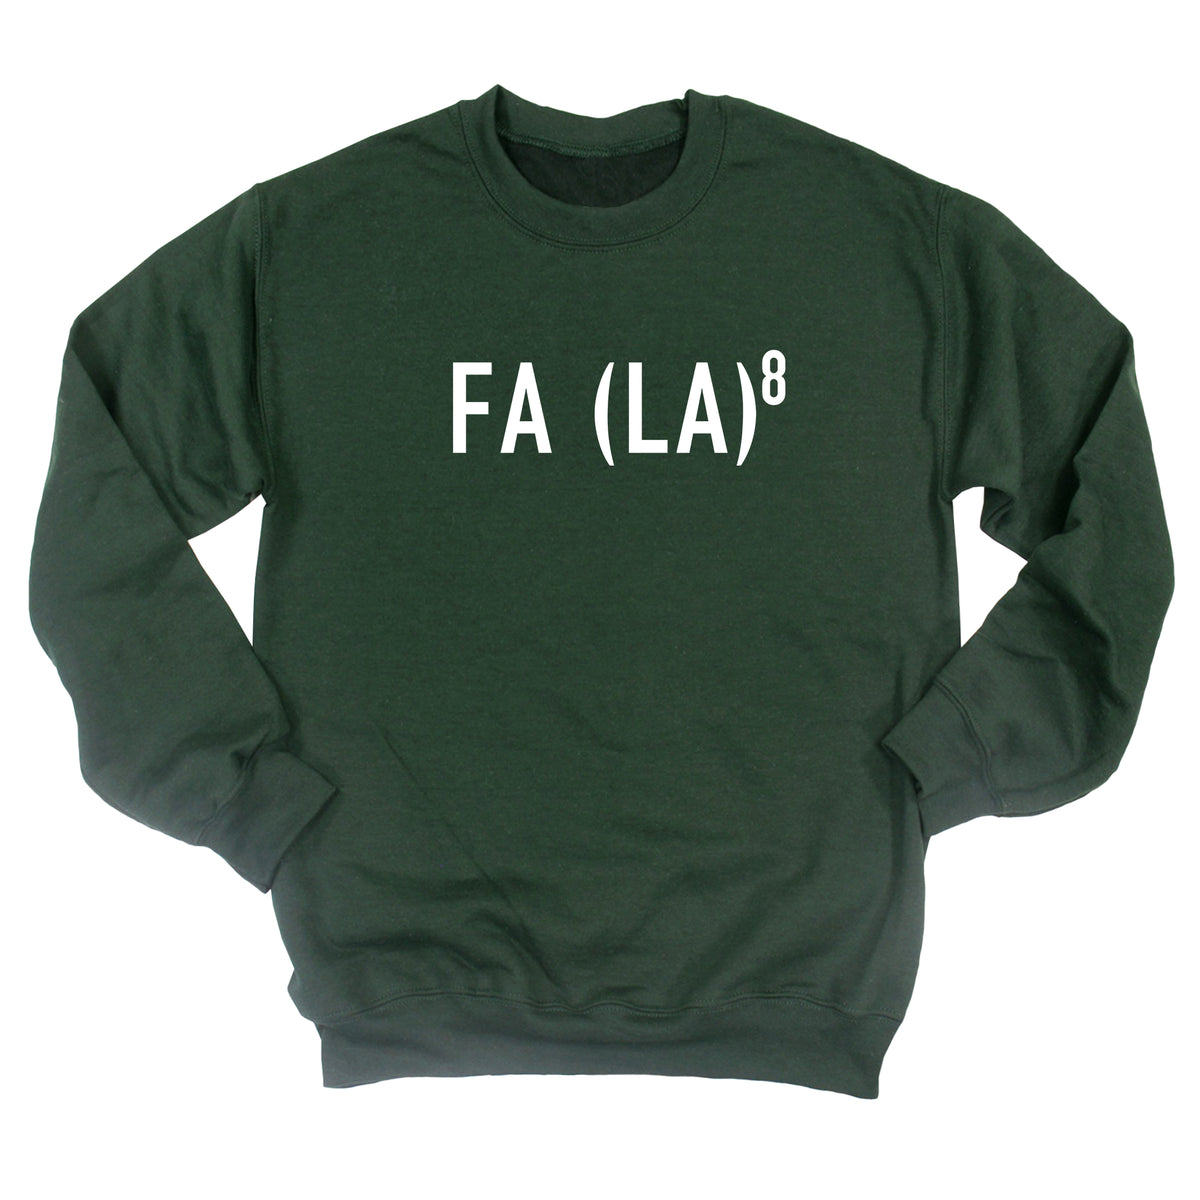 FA (LA)8 Sweatshirt